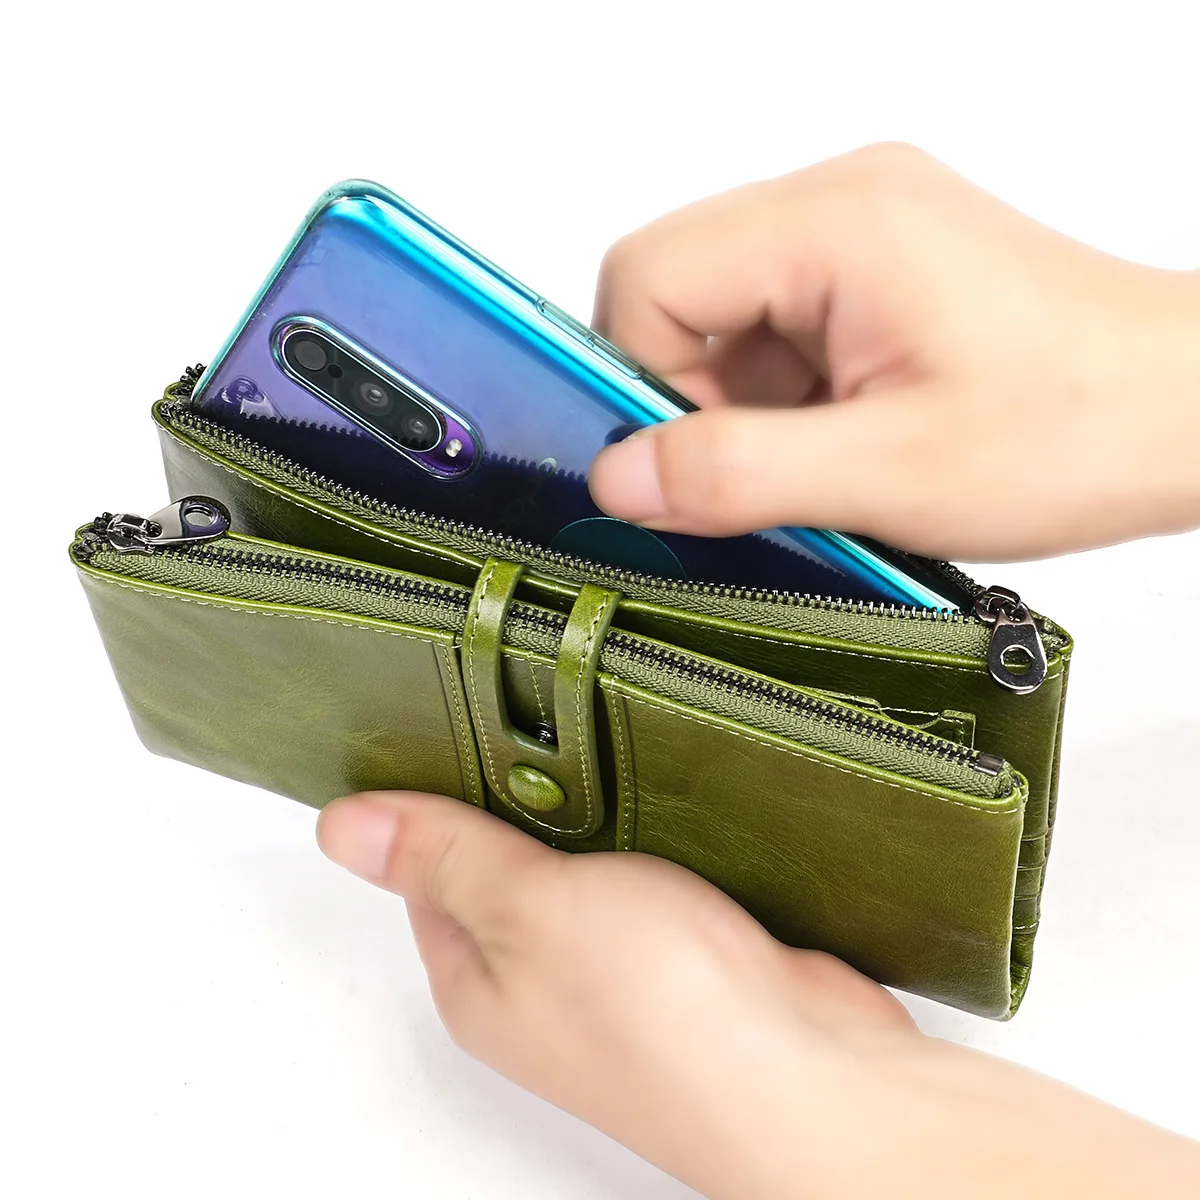 RFID-женский кошелек, кожаный бумажник из воловьей кожи, многофункциональный кошелек для мелочи, ручная сумка, лучший подарок на день рождения